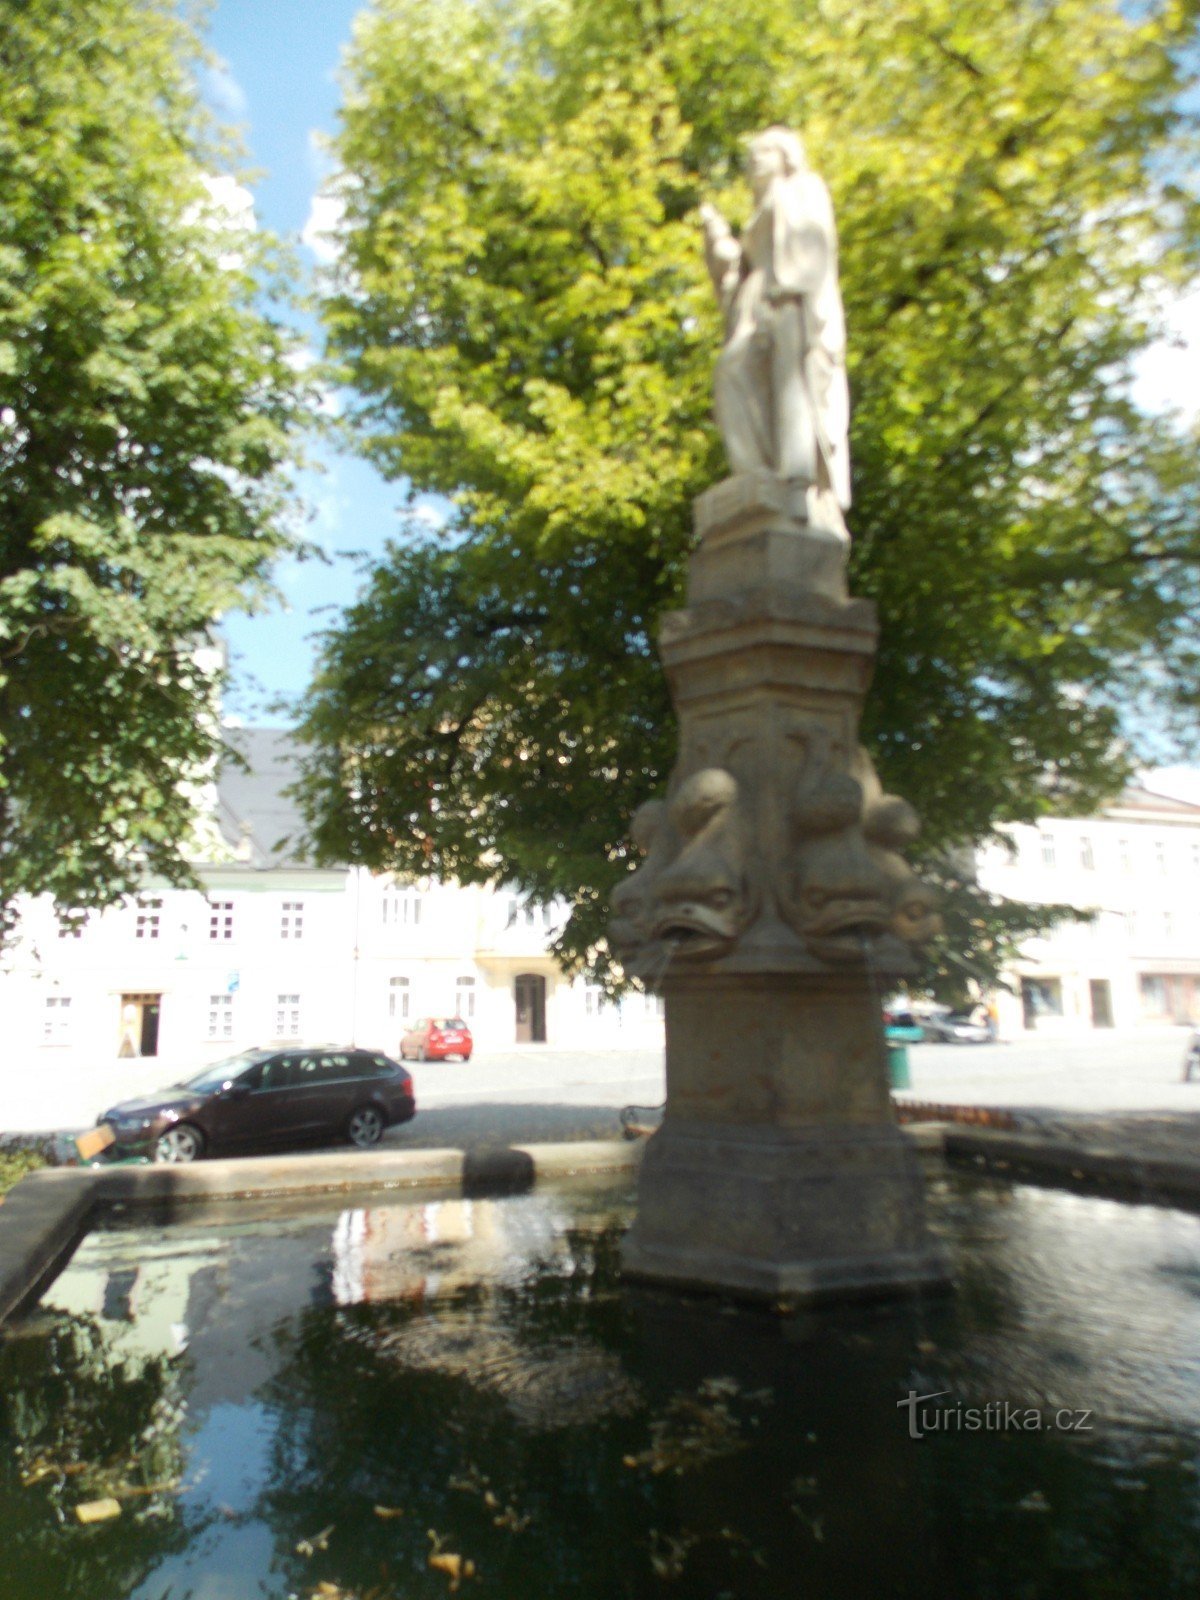 The fountain on Velké náměstí in the town of Králíky